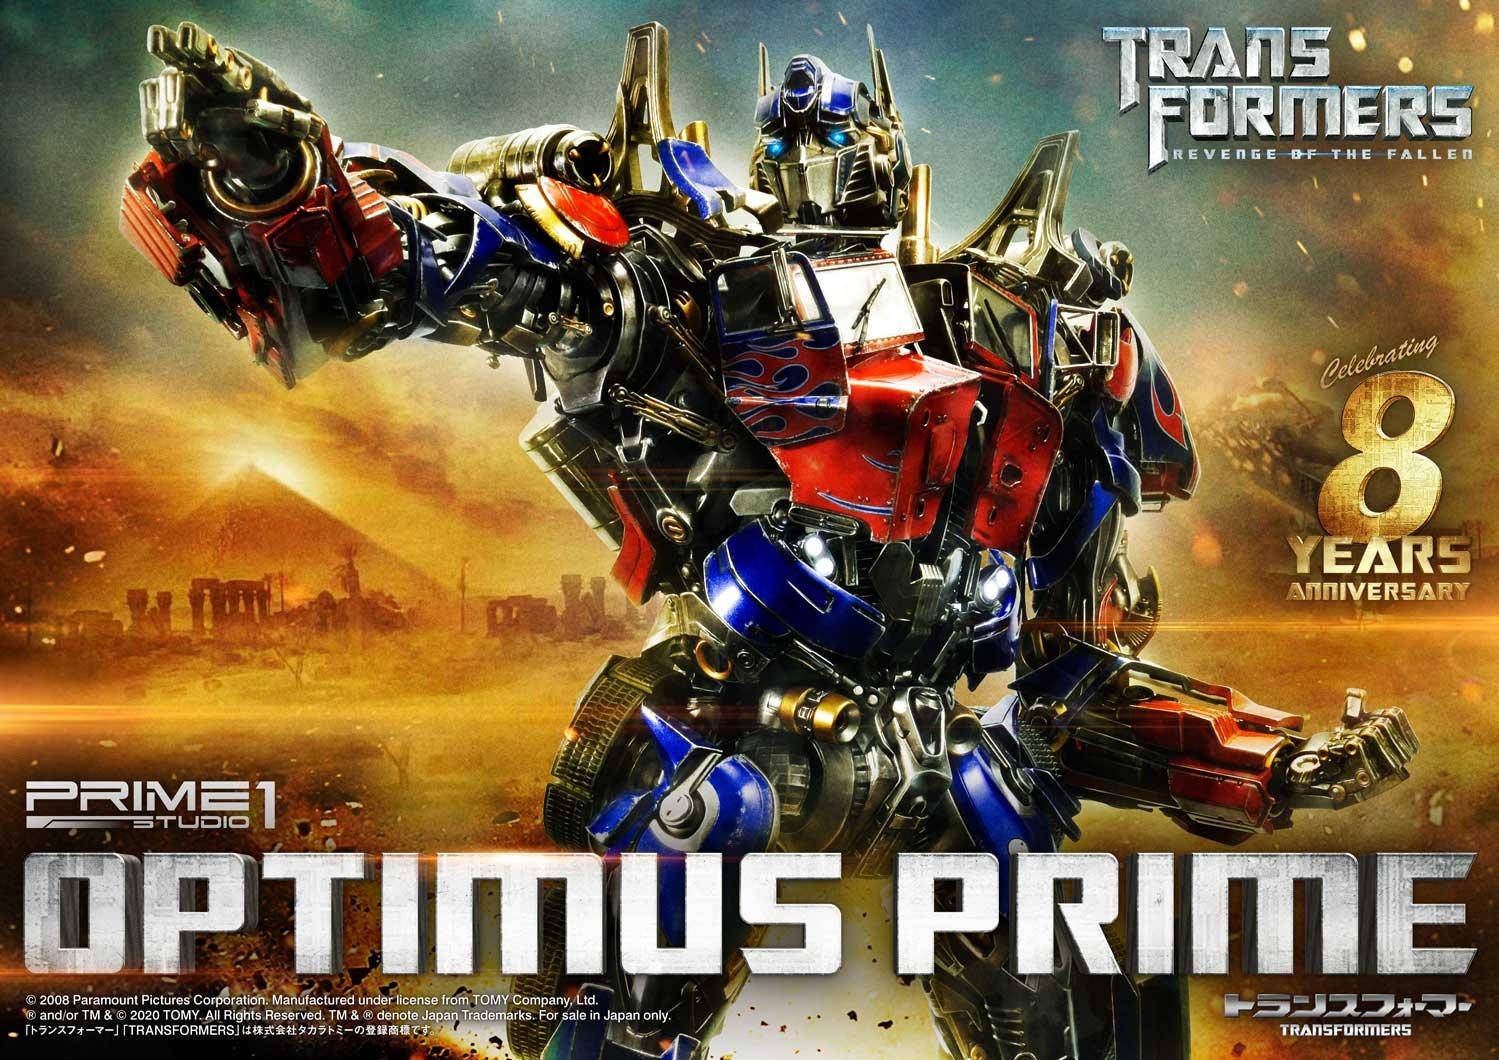 Immagine di Optimus Prime da Prime 1 Studio